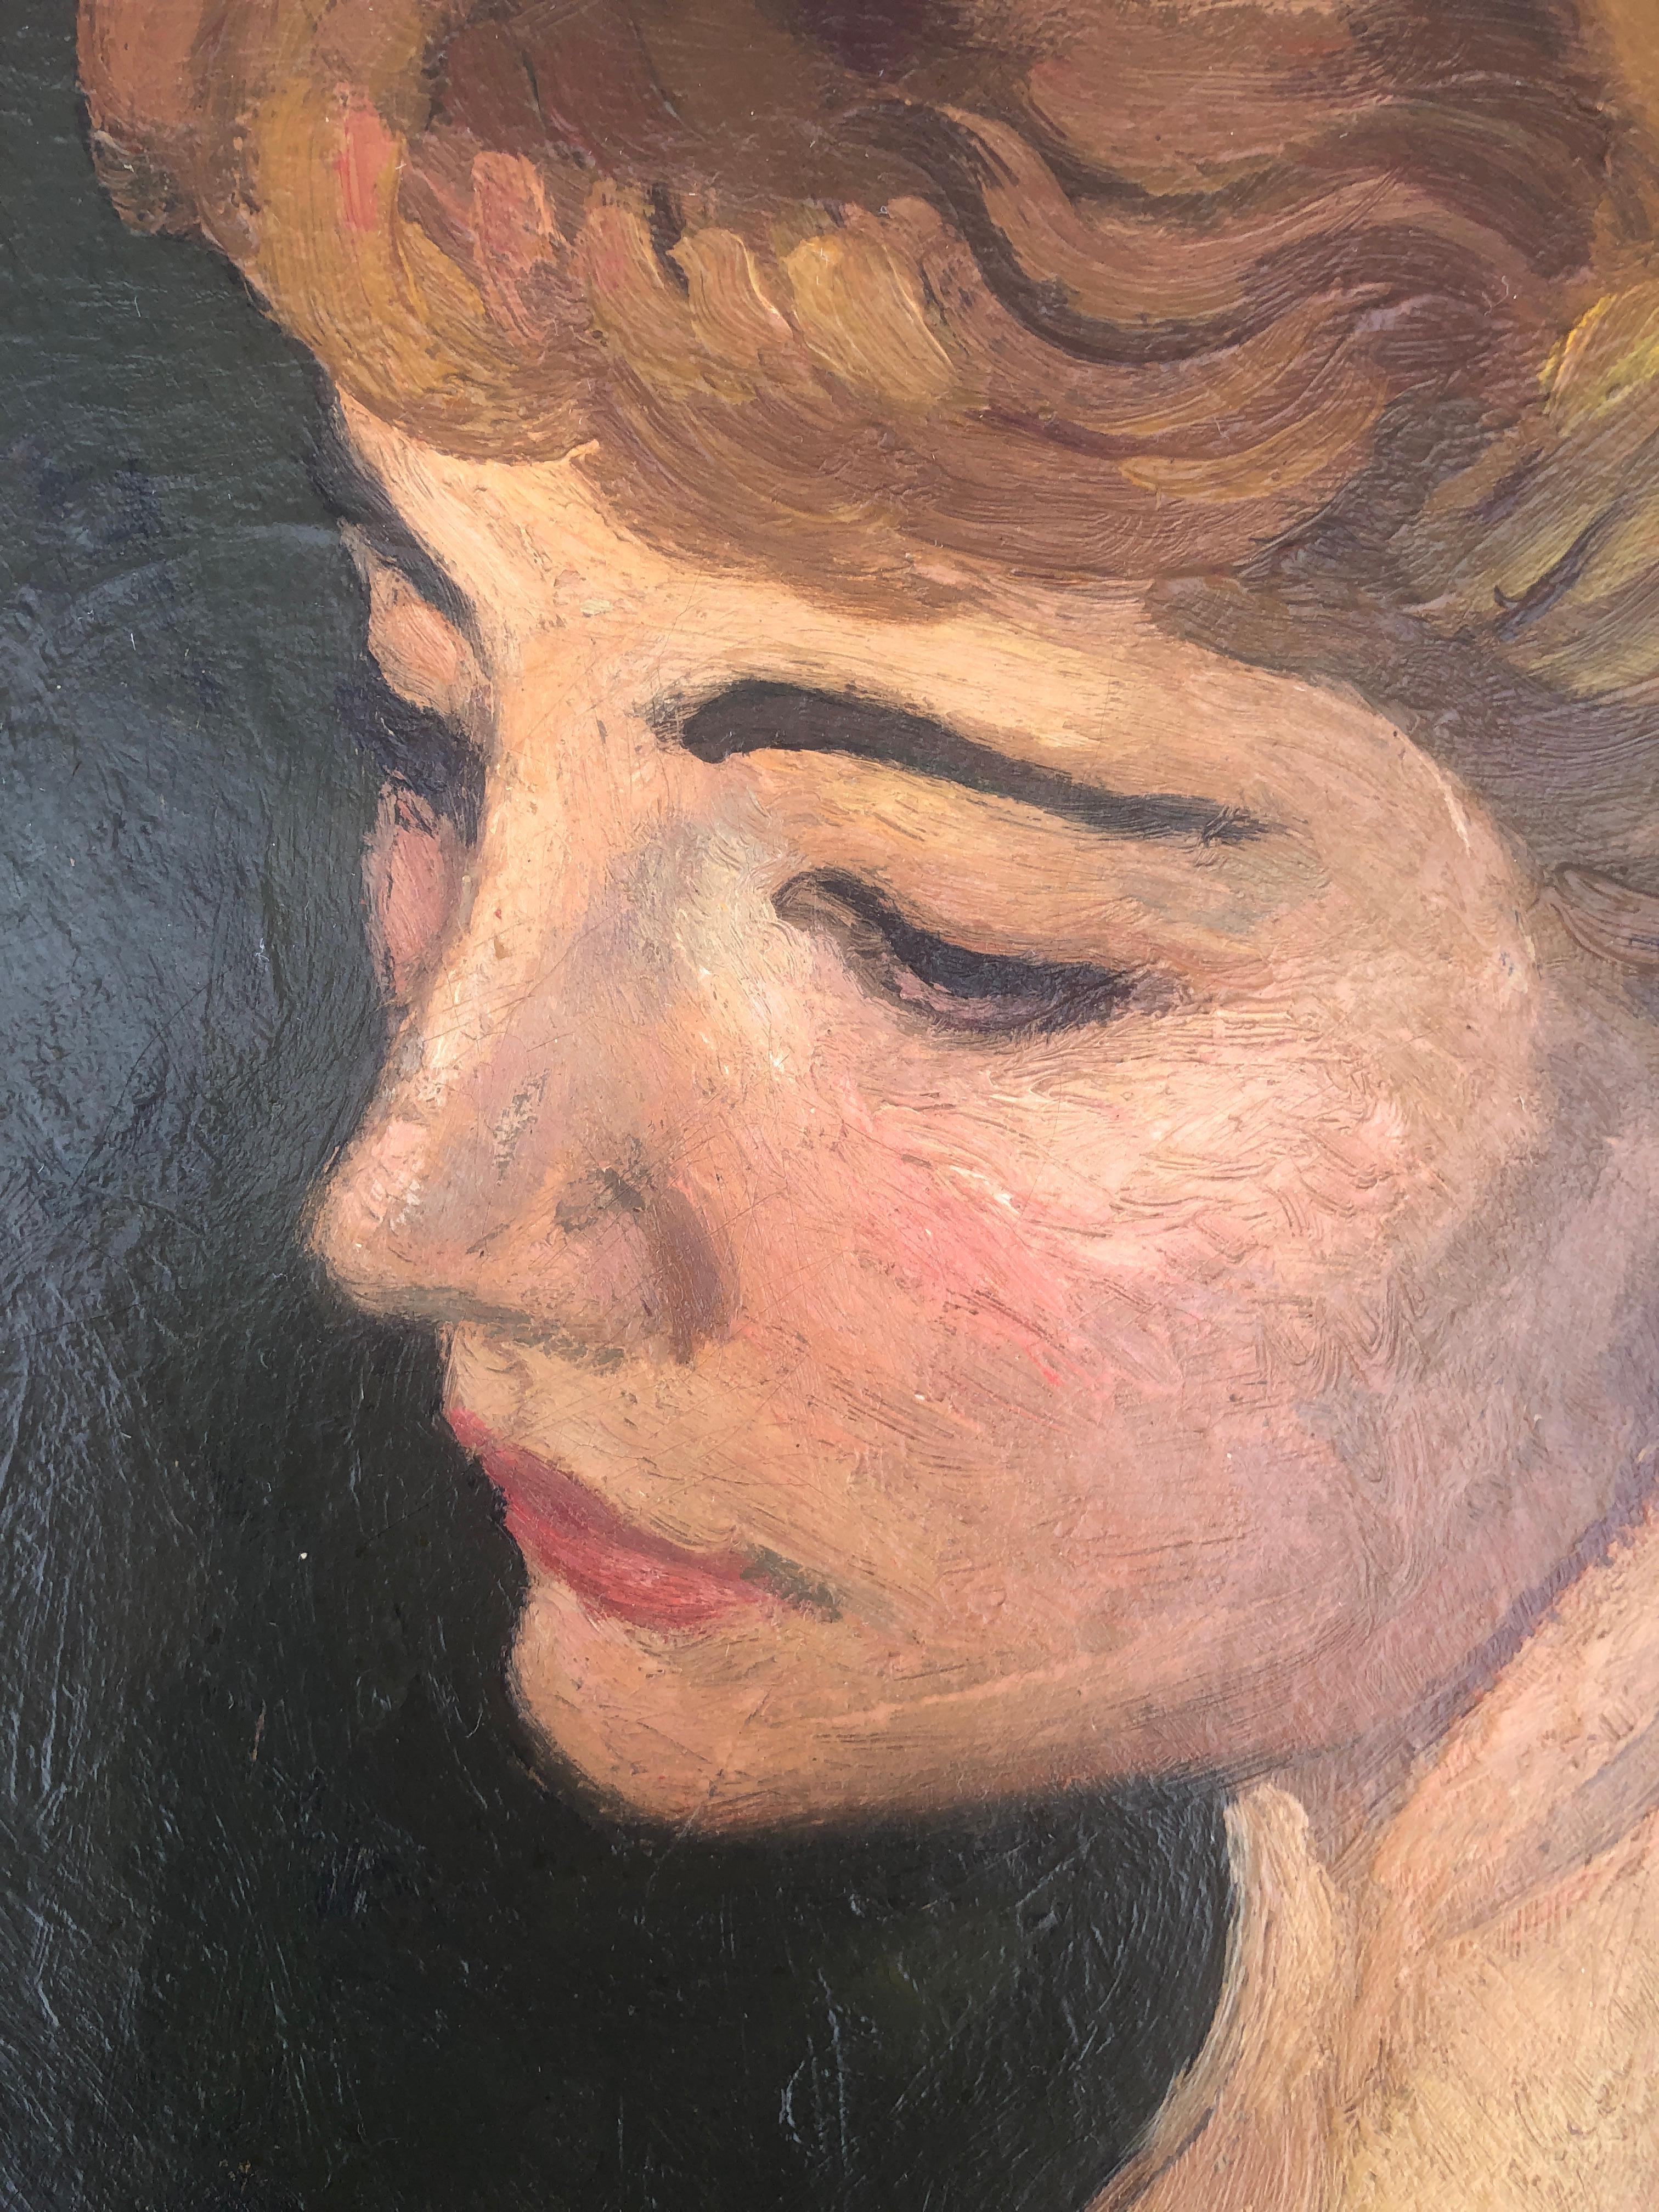 Frau im Profil, Öl auf Leinwand, Porträtgemälde (Impressionismus), Painting, von Alexandre Siches